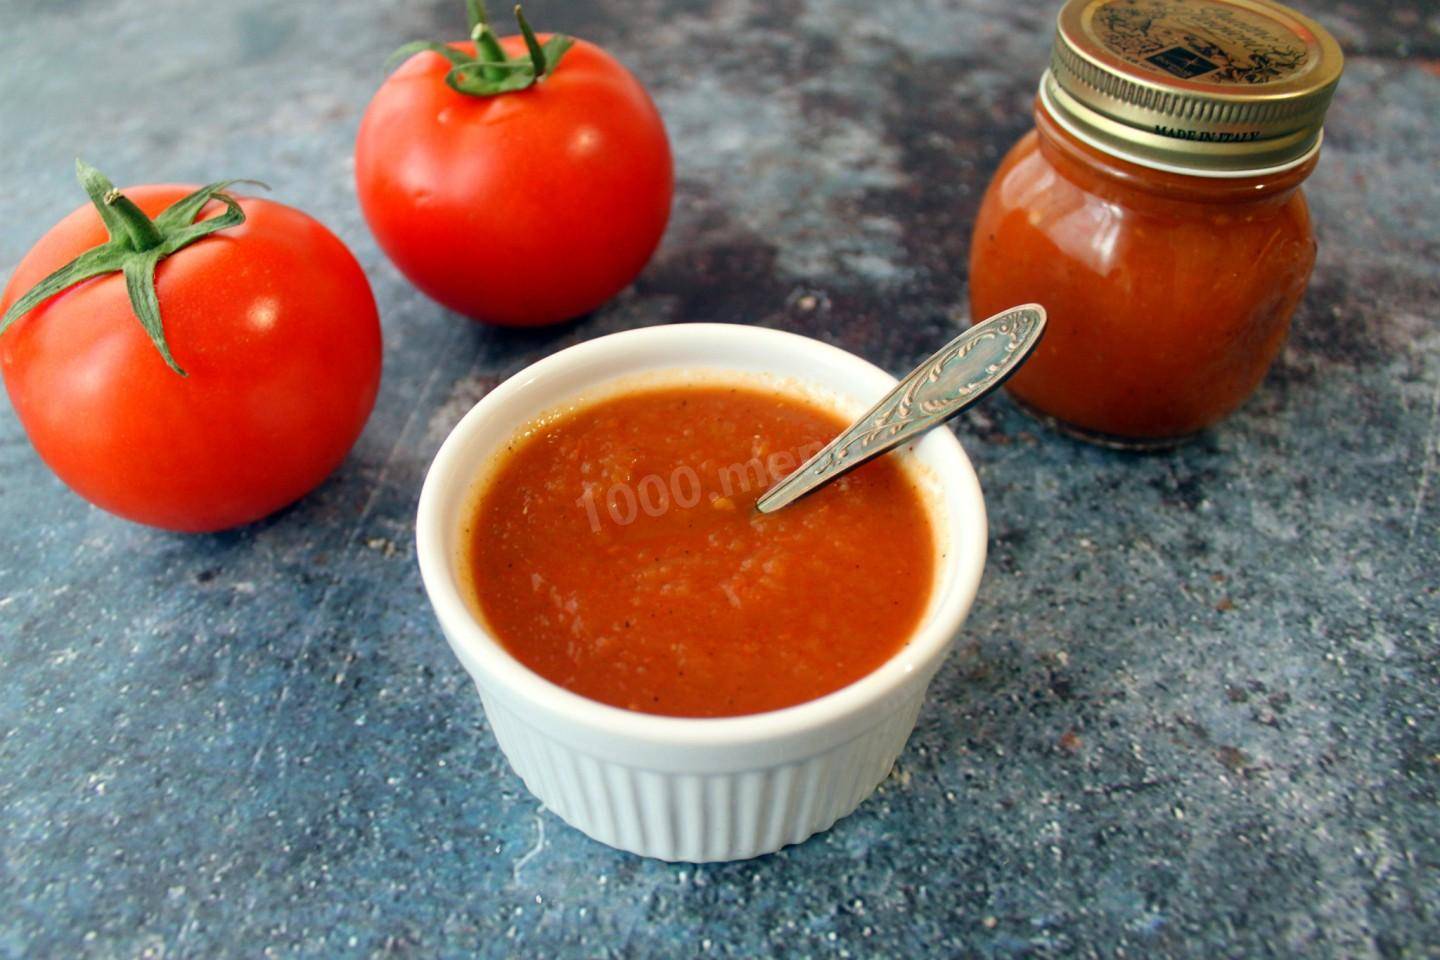 Кетчуп из помидоров на зиму своими руками в домашних условиях пошагово с фото – простой вкусный рецепт томатного кетчупа пальчики оближешь